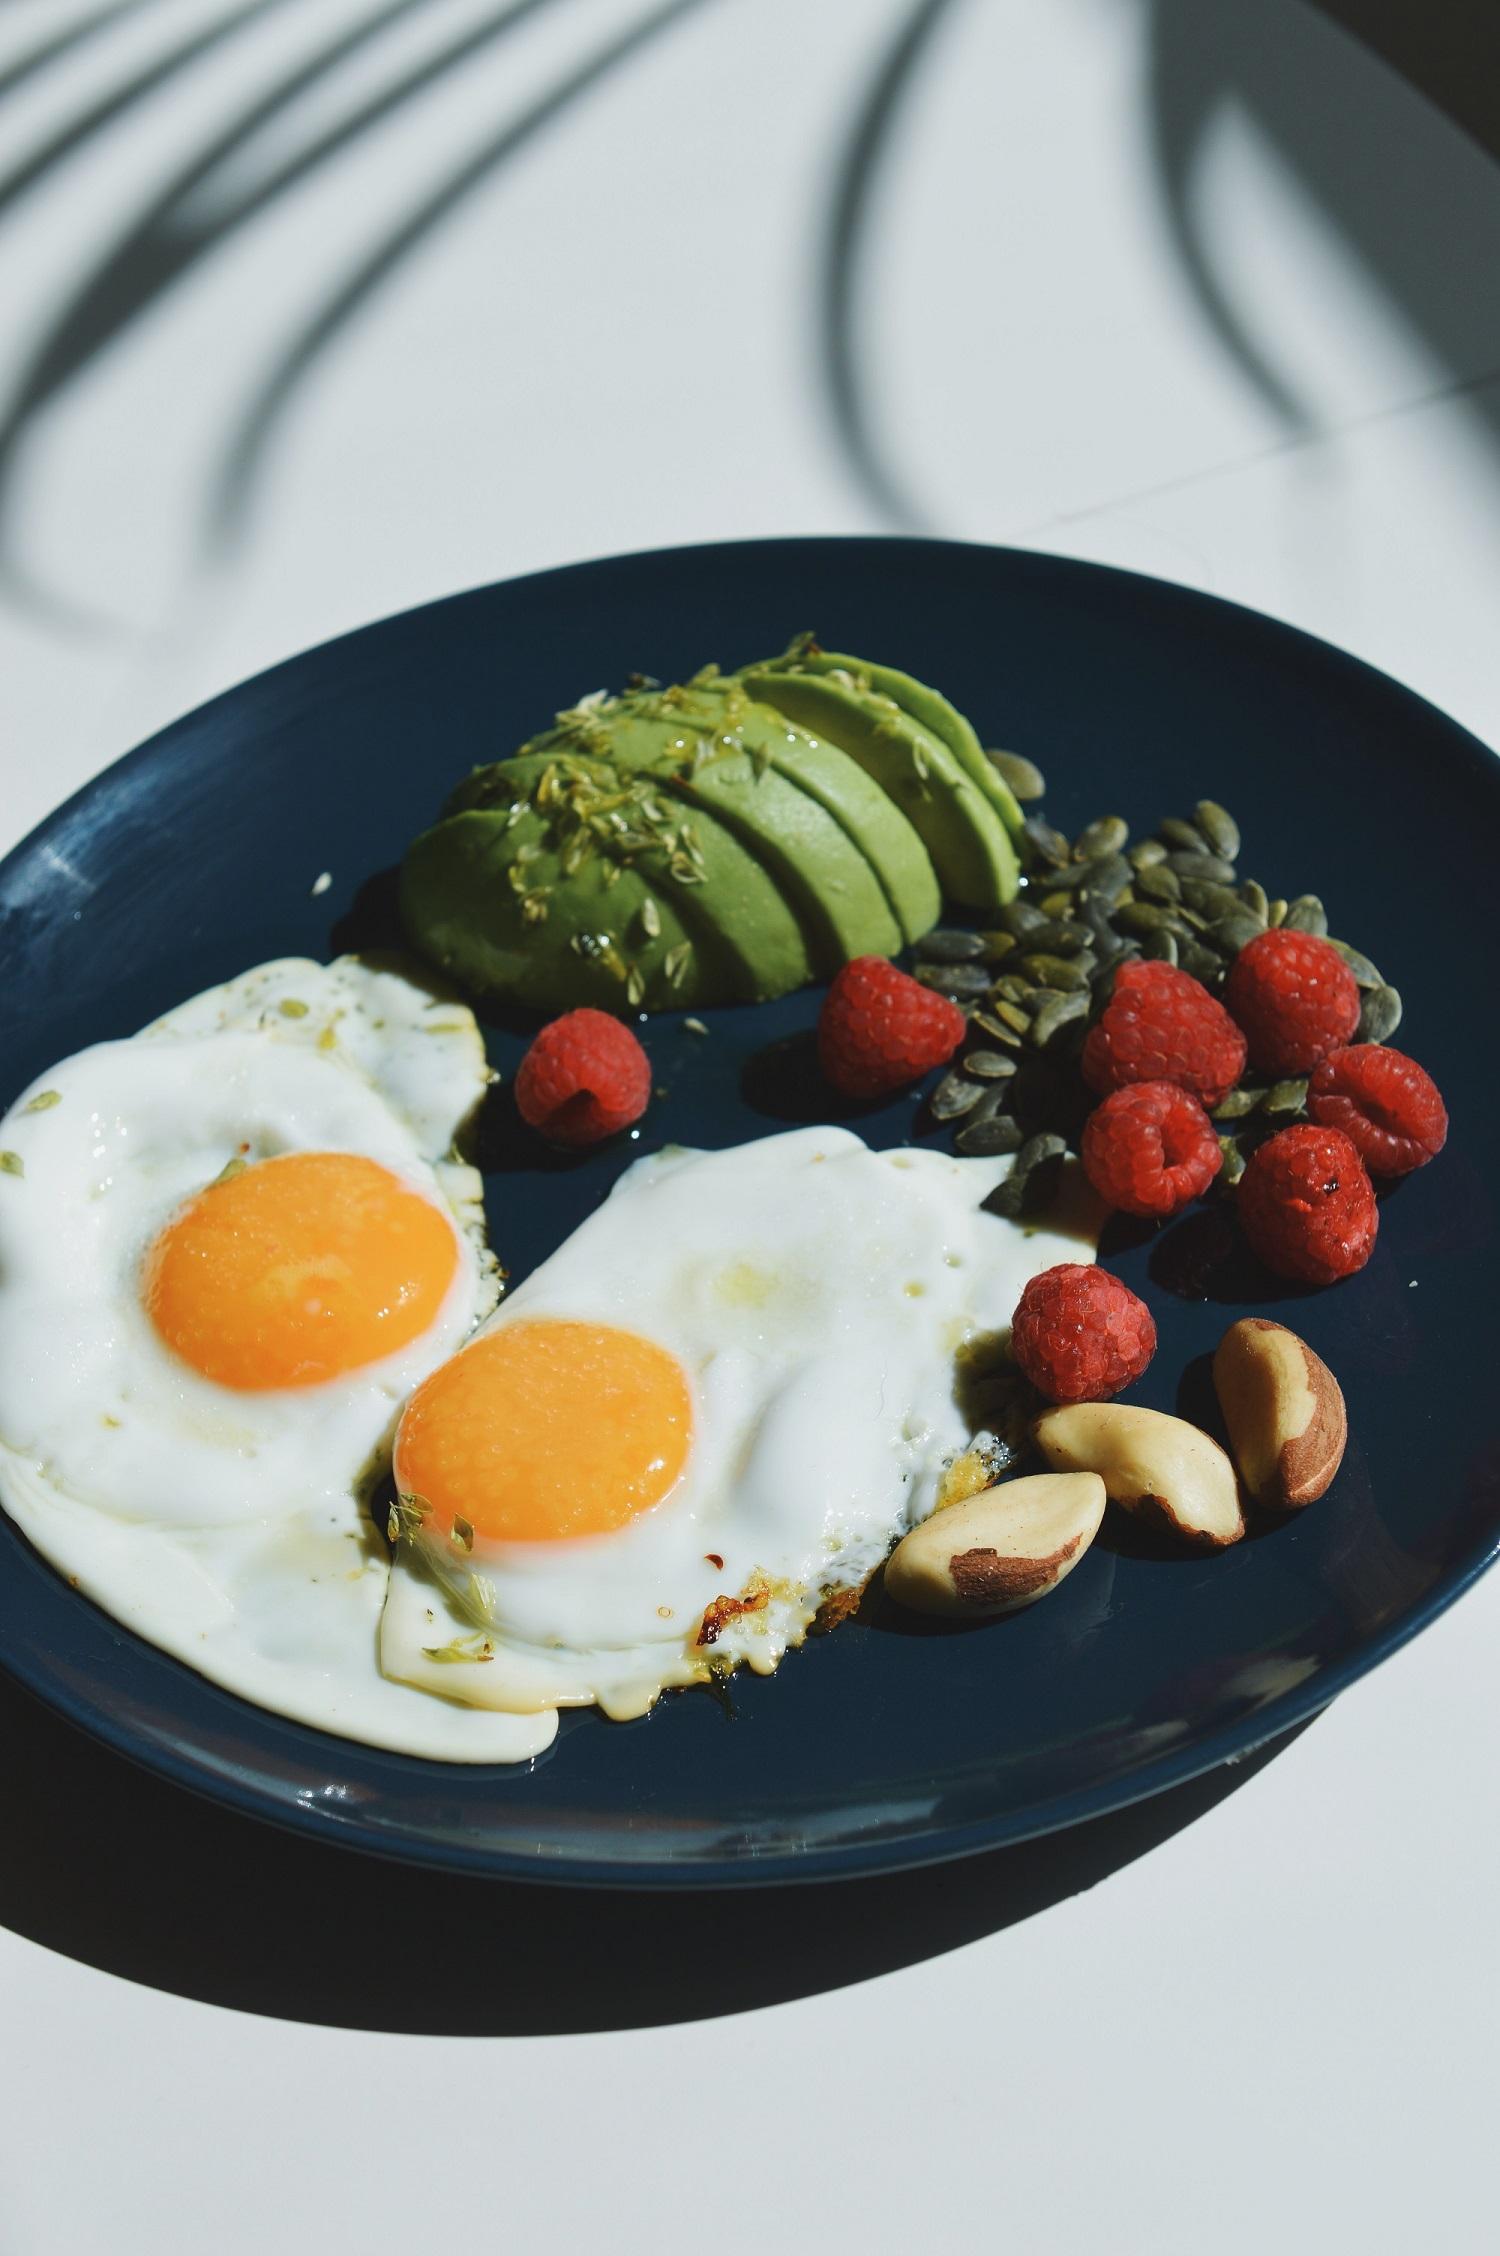 Desayuno salado con huevos, aguacate, frambuesas y frutos secos. Foto: Daniel Santalla